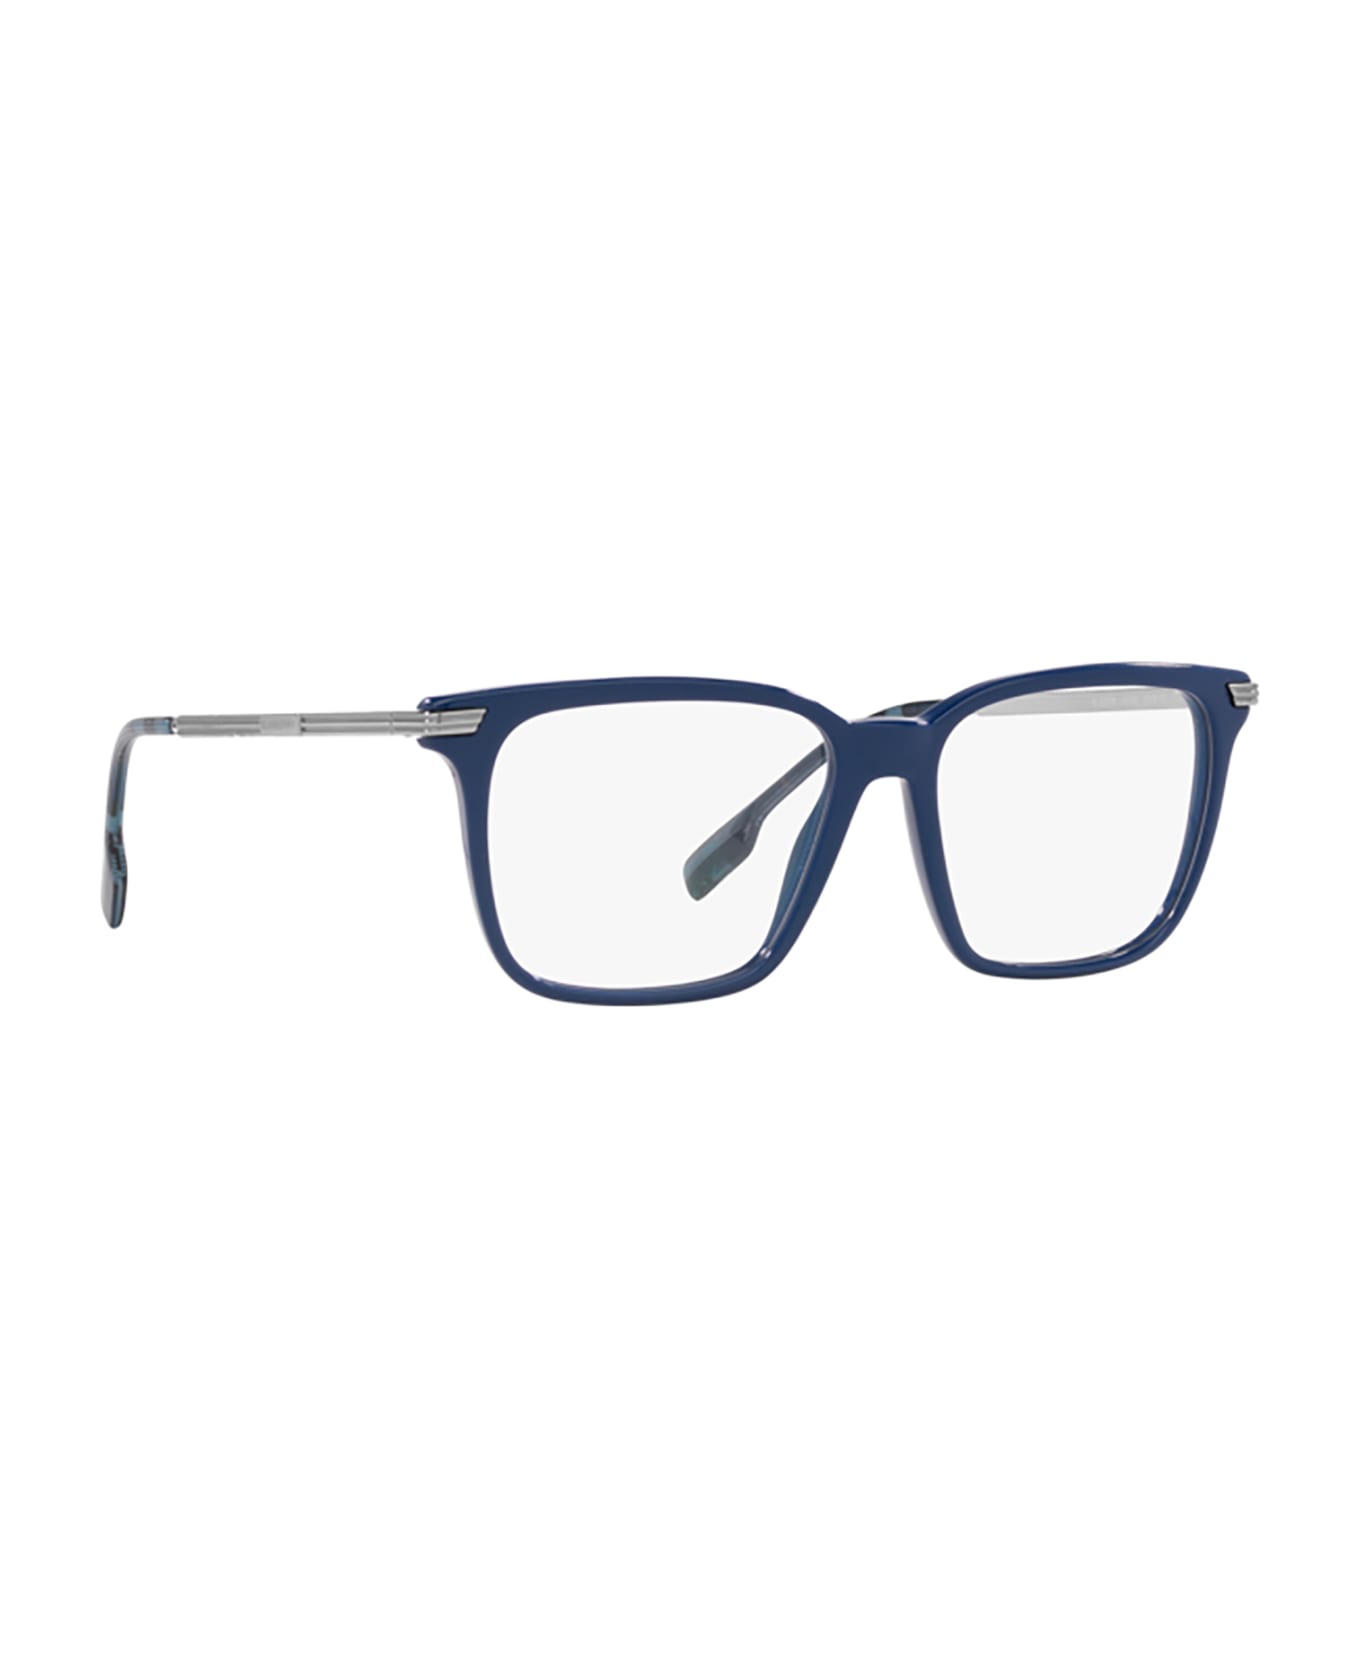 Burberry Eyewear Be2378 Blue Glasses - Blue アイウェア